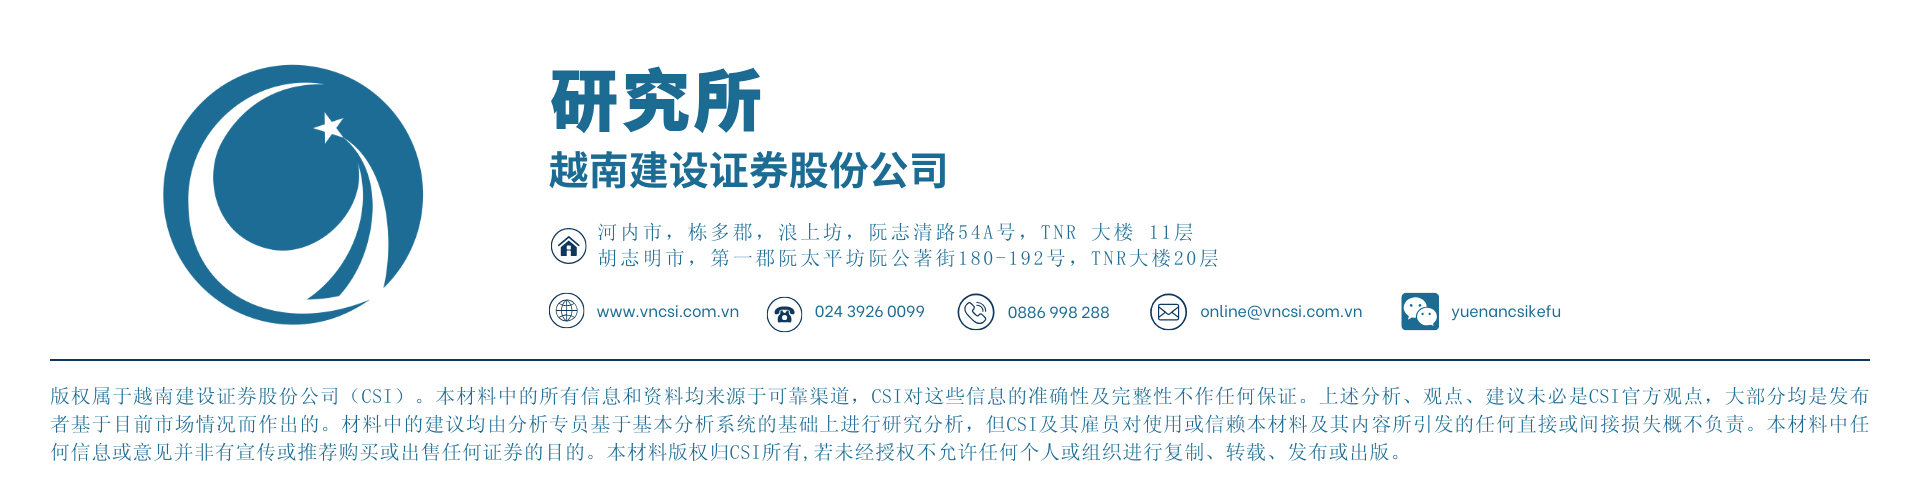 个股信息-越南投资,个股研报 - 槟椥东海股份公司(DHC - HSX) “卖纸挣钱”的企业有什么远景？,越南证券(5)